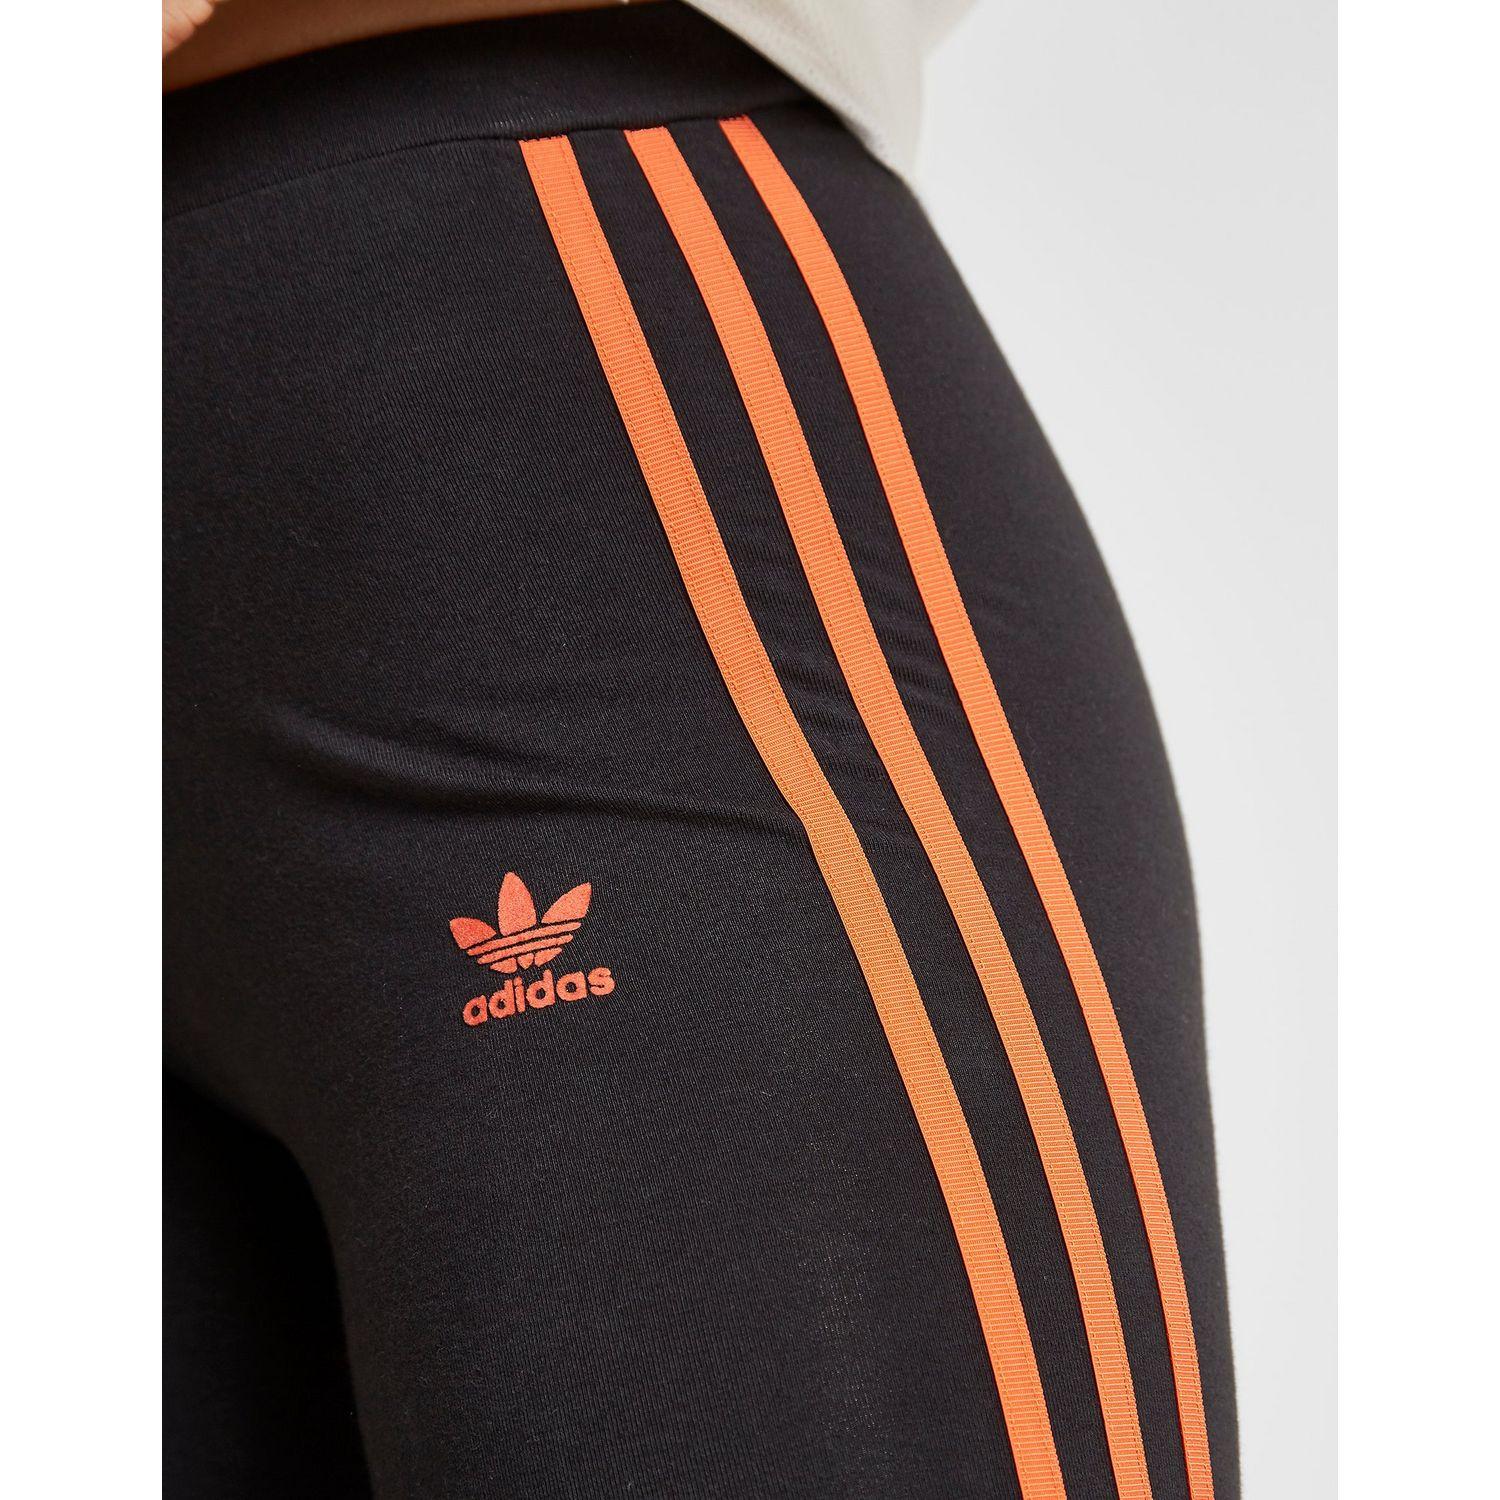 adidas orange stripe leggings